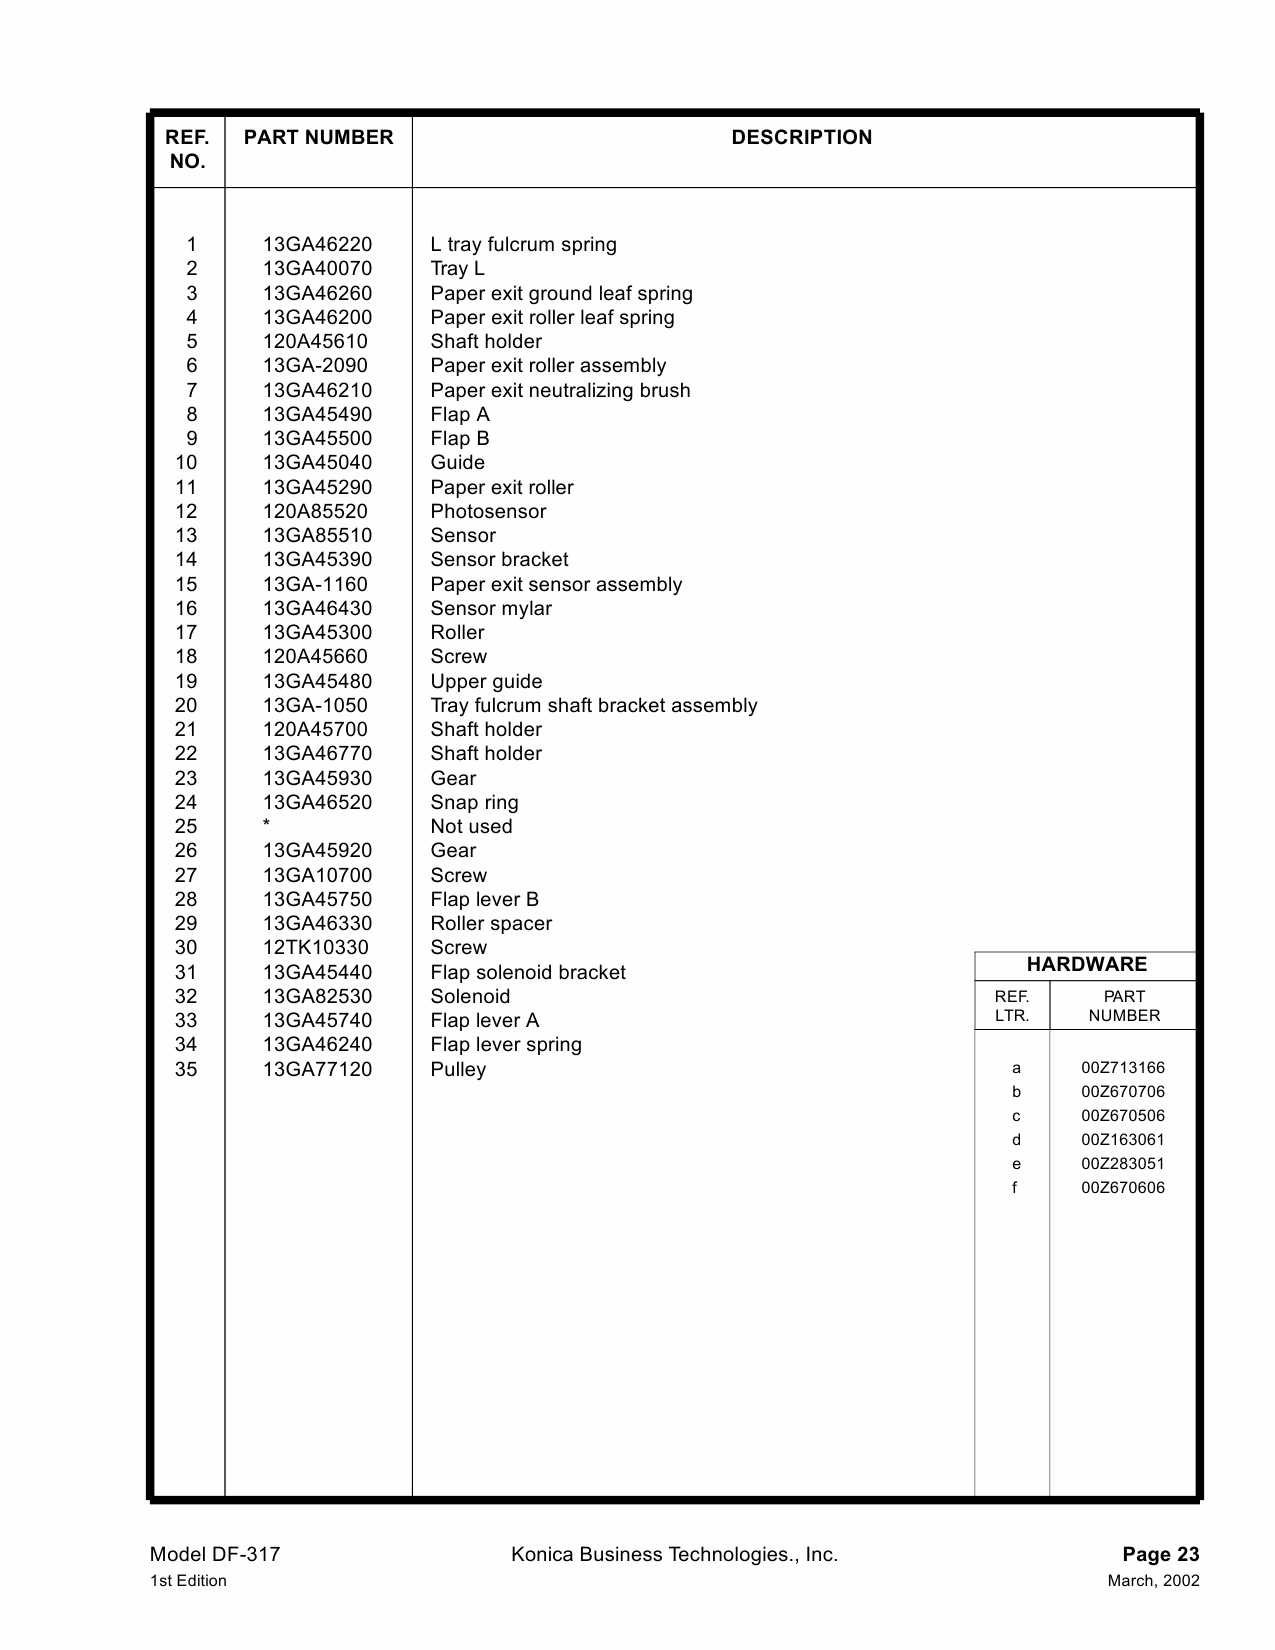 Konica-Minolta Options DF-317 Parts Manual-4